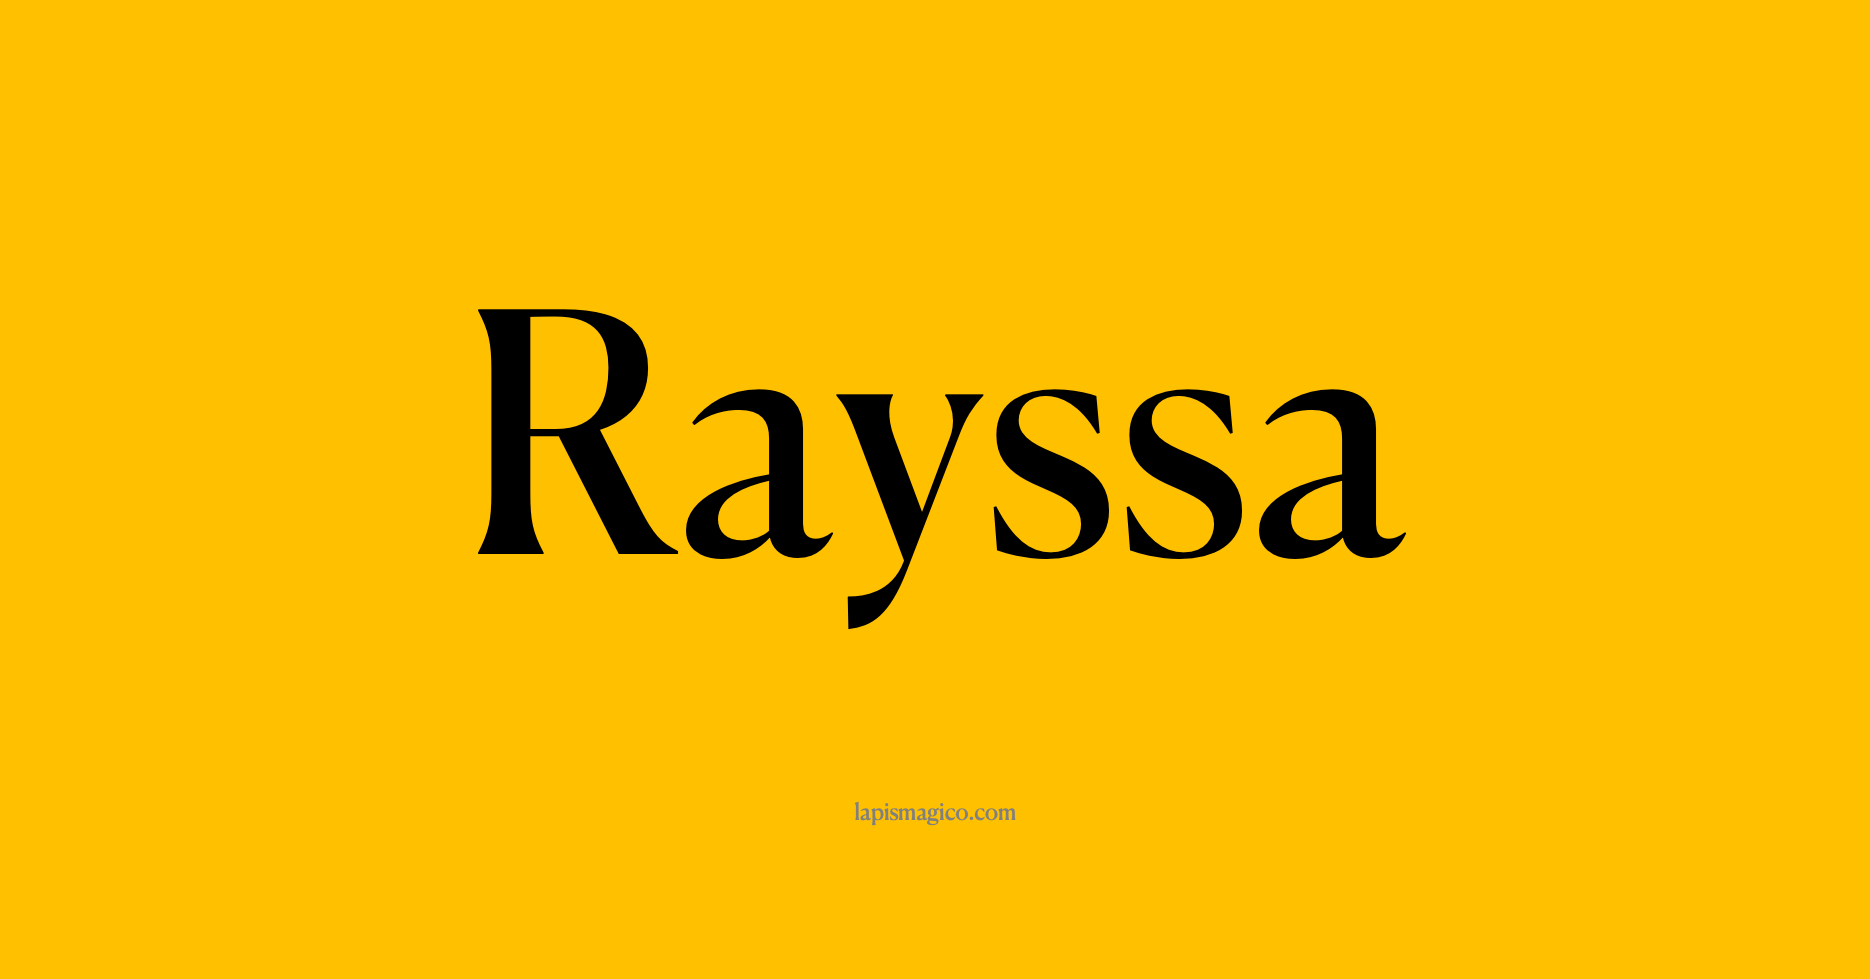 Nome Rayssa, ficha divertida com pontilhado para crianças